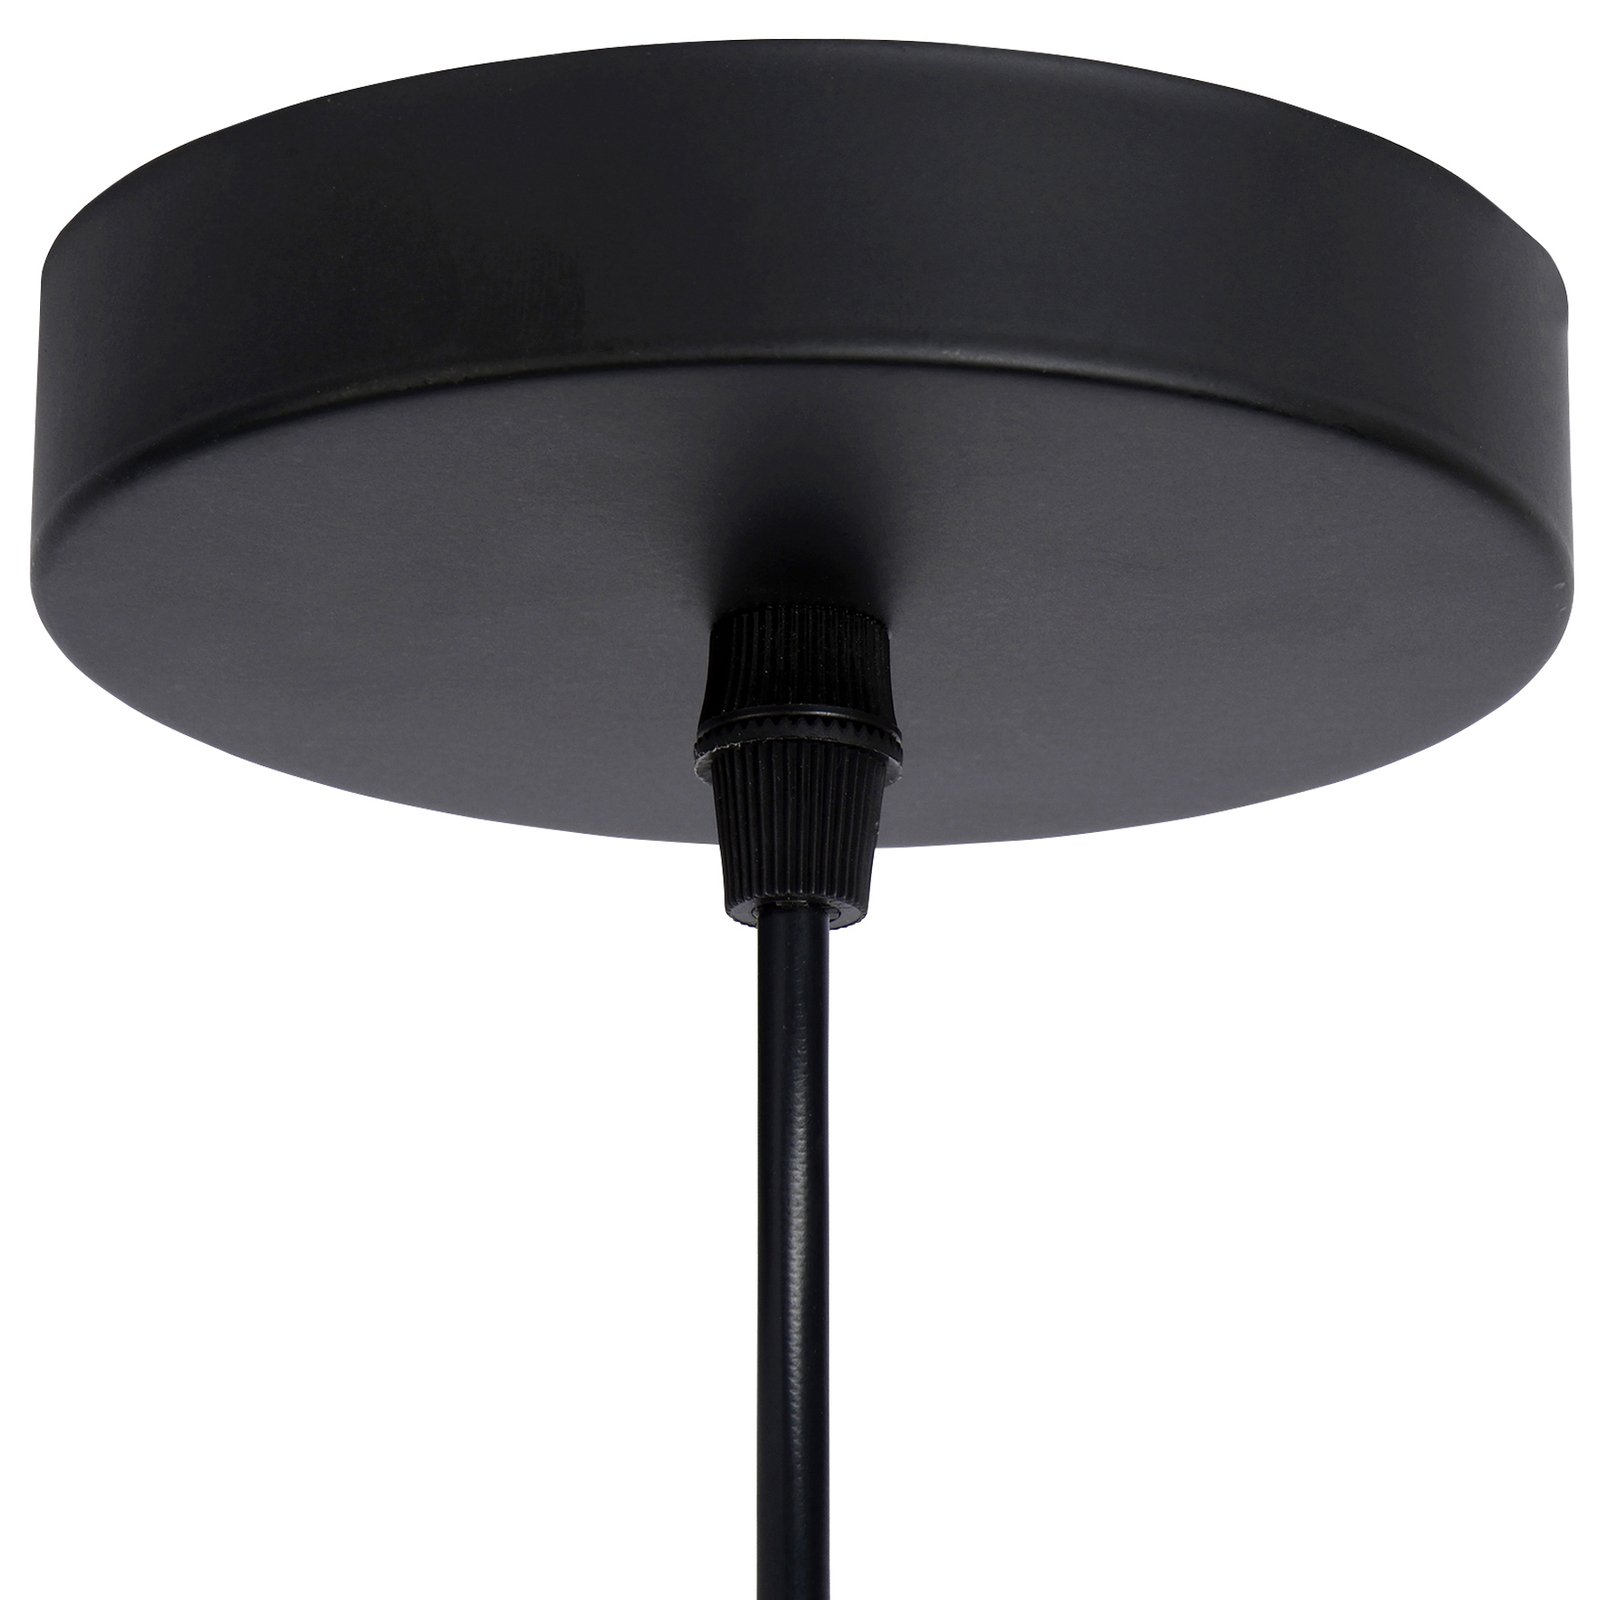 Mesh pendant light, 1-bulb, black, Ø 22 cm